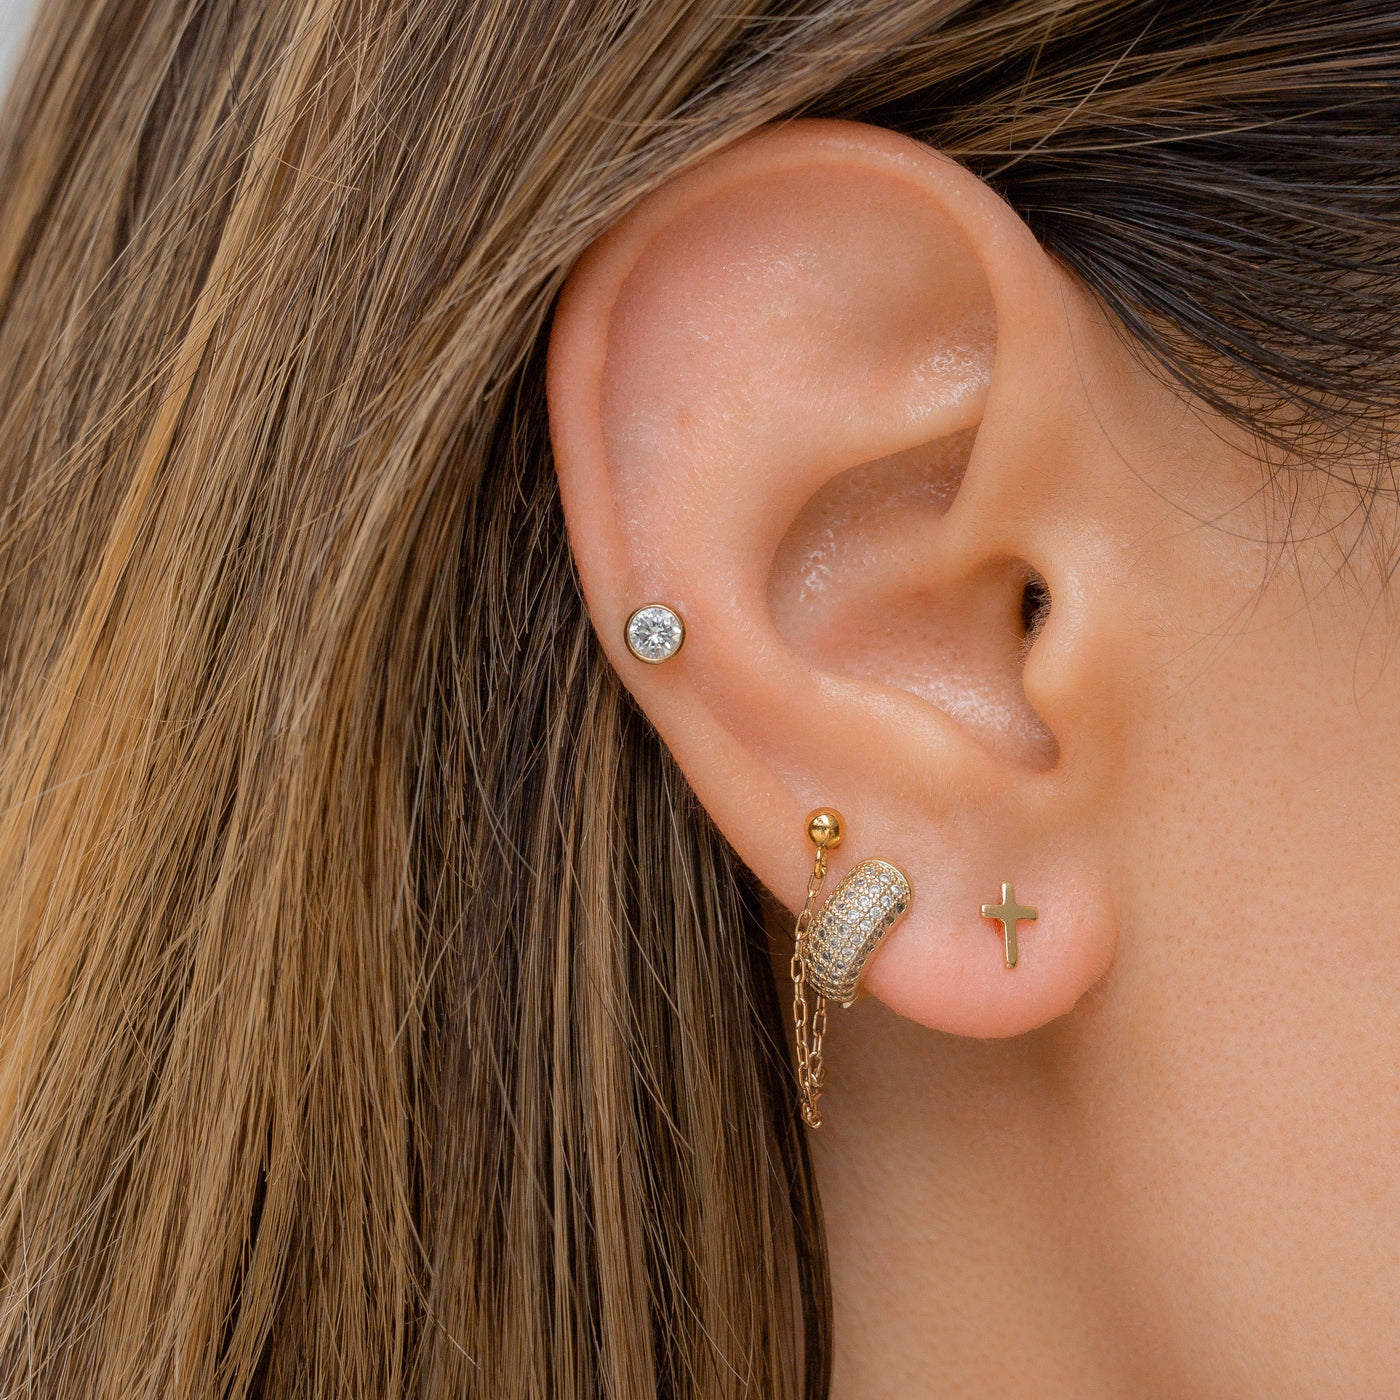 Ear wearing dainty cross stud earrings in 14k gold fill